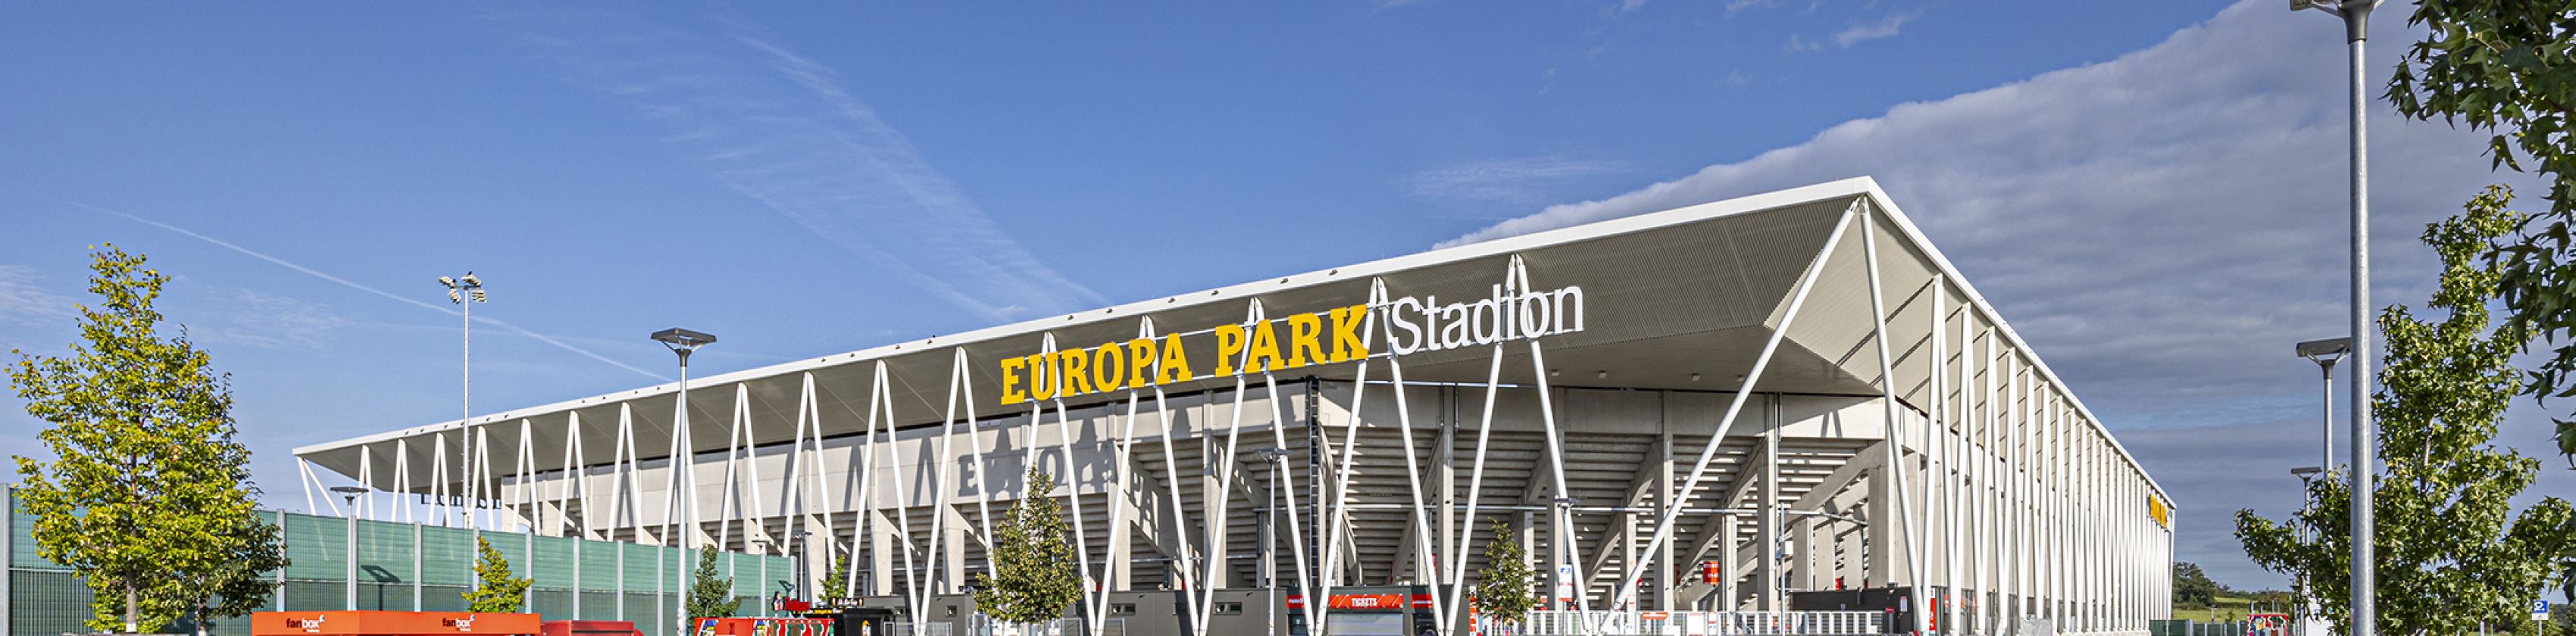 Europa-Park-Stadion-Außenansicht-FWTM-Spiegelhalter.6, © FWTM-Spiegelhalter